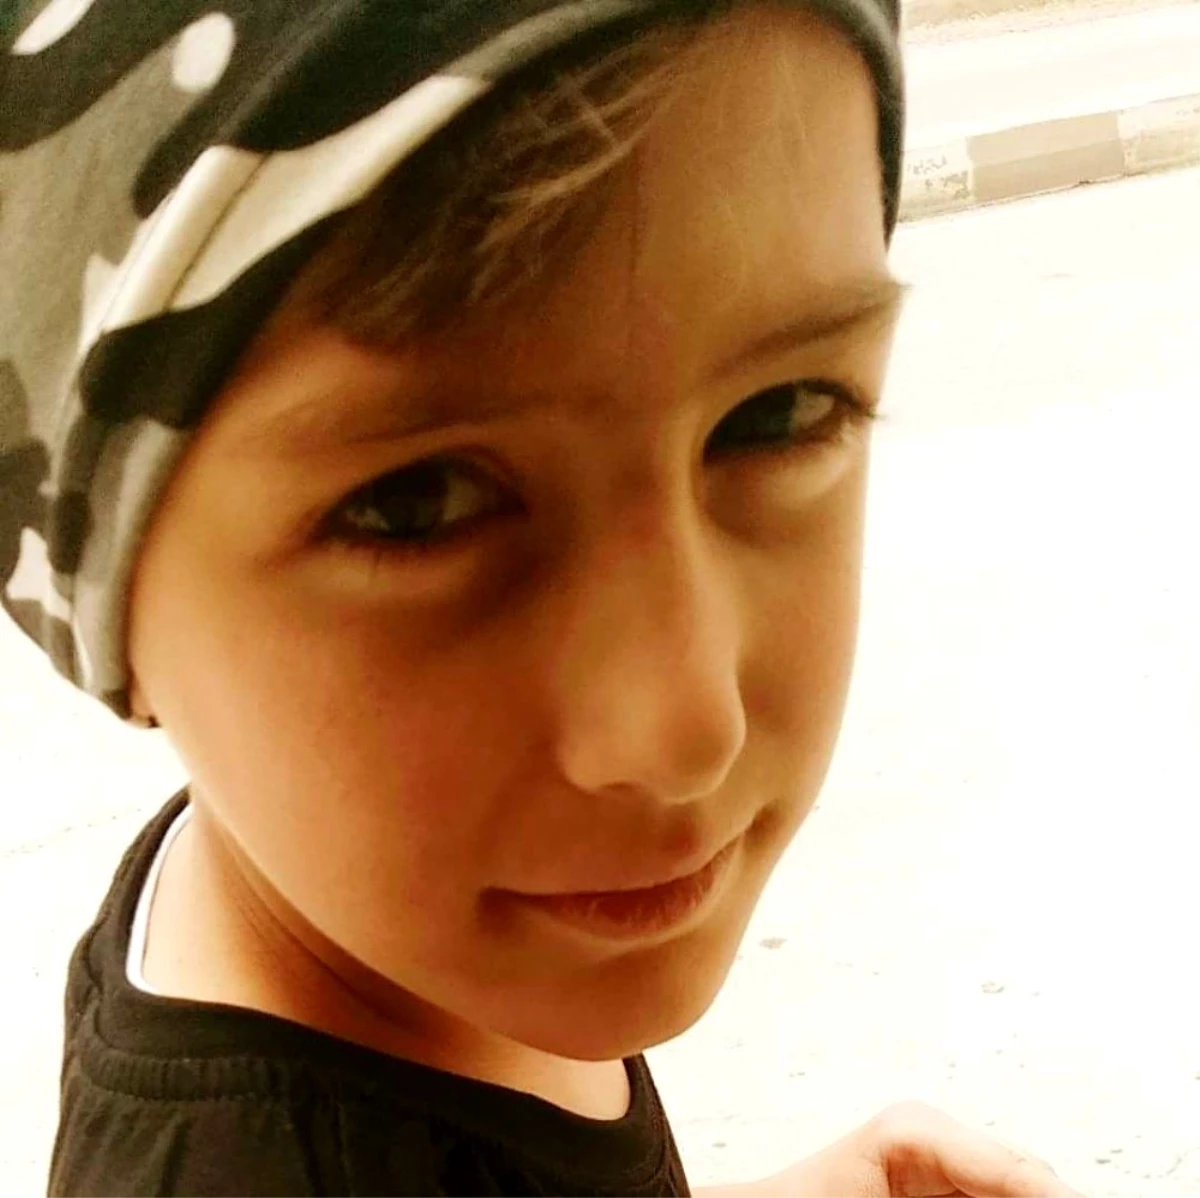 Bisikletten düşen 12 yaşındaki çocuk hayatını kaybetti